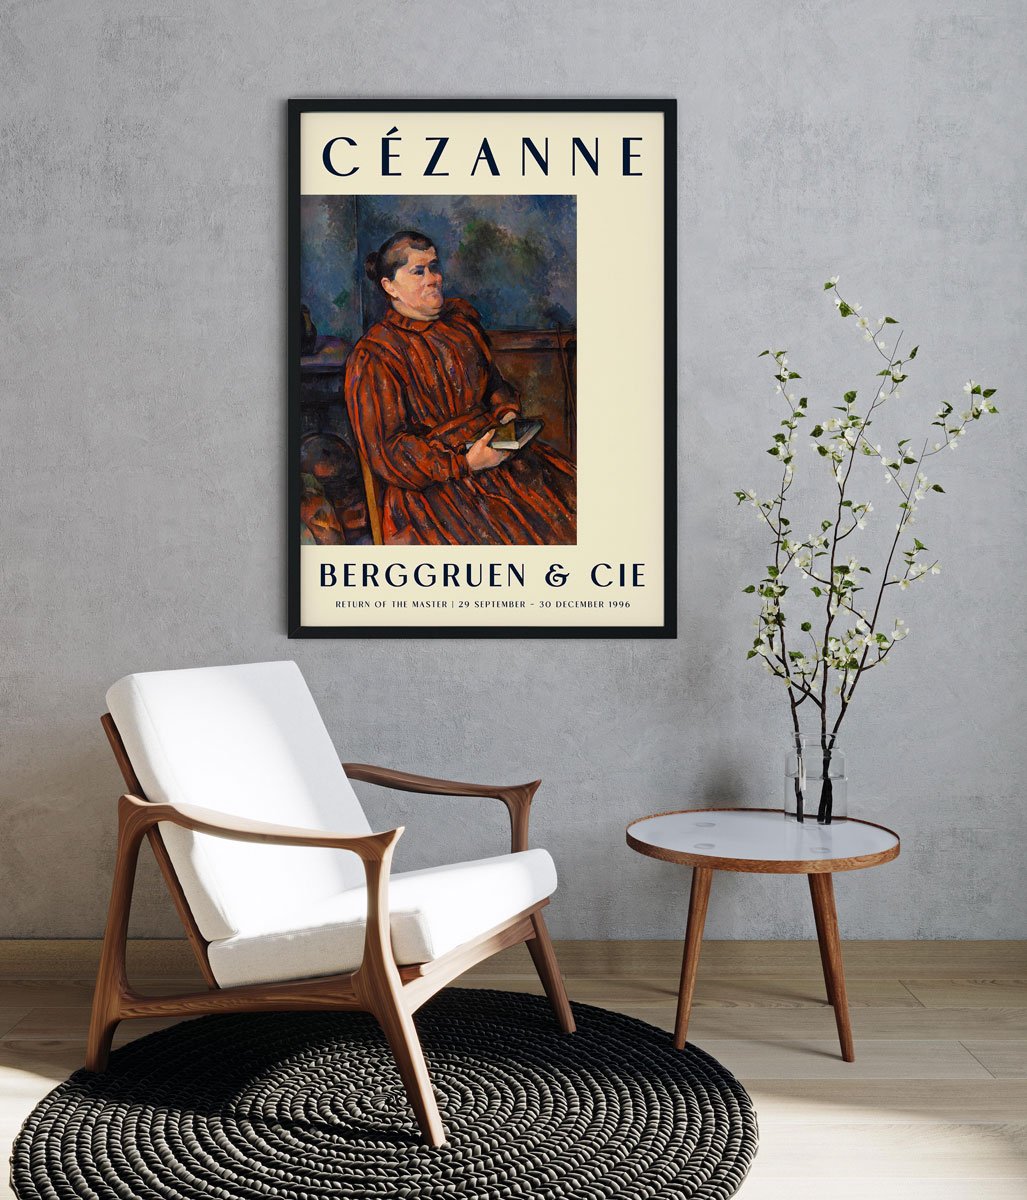 Cézanne Portrait of a Woman Art Exhibition Poster